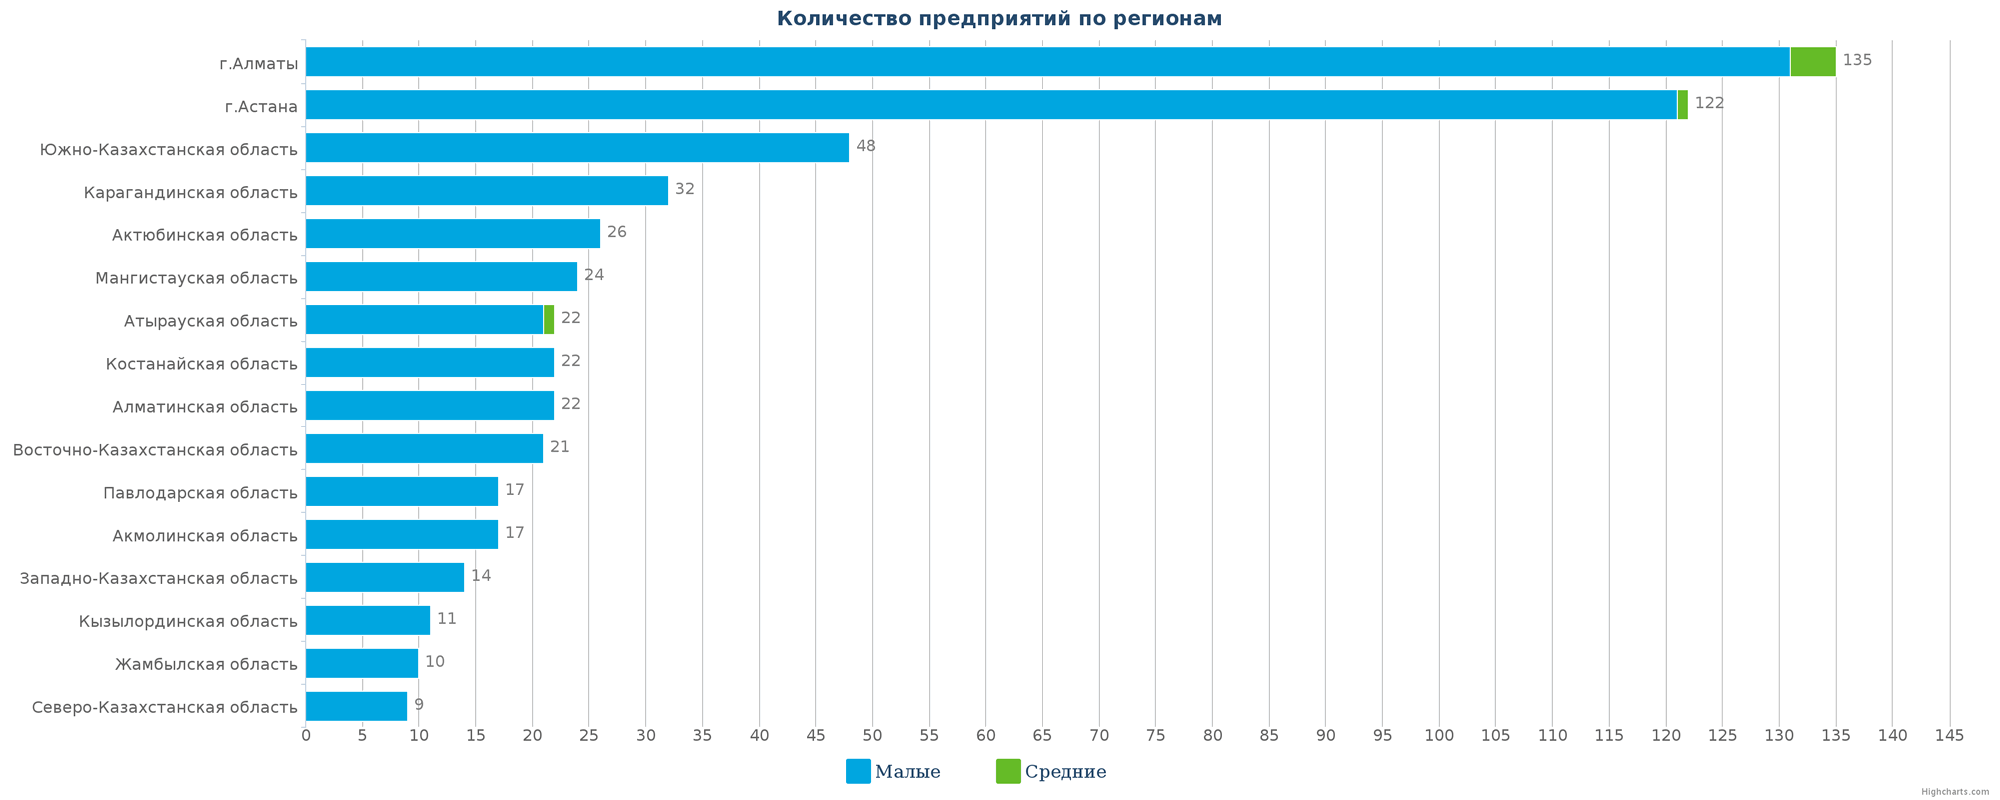 Количество новых зарегистированных юридических лиц в справочнике по регионам Казахстана